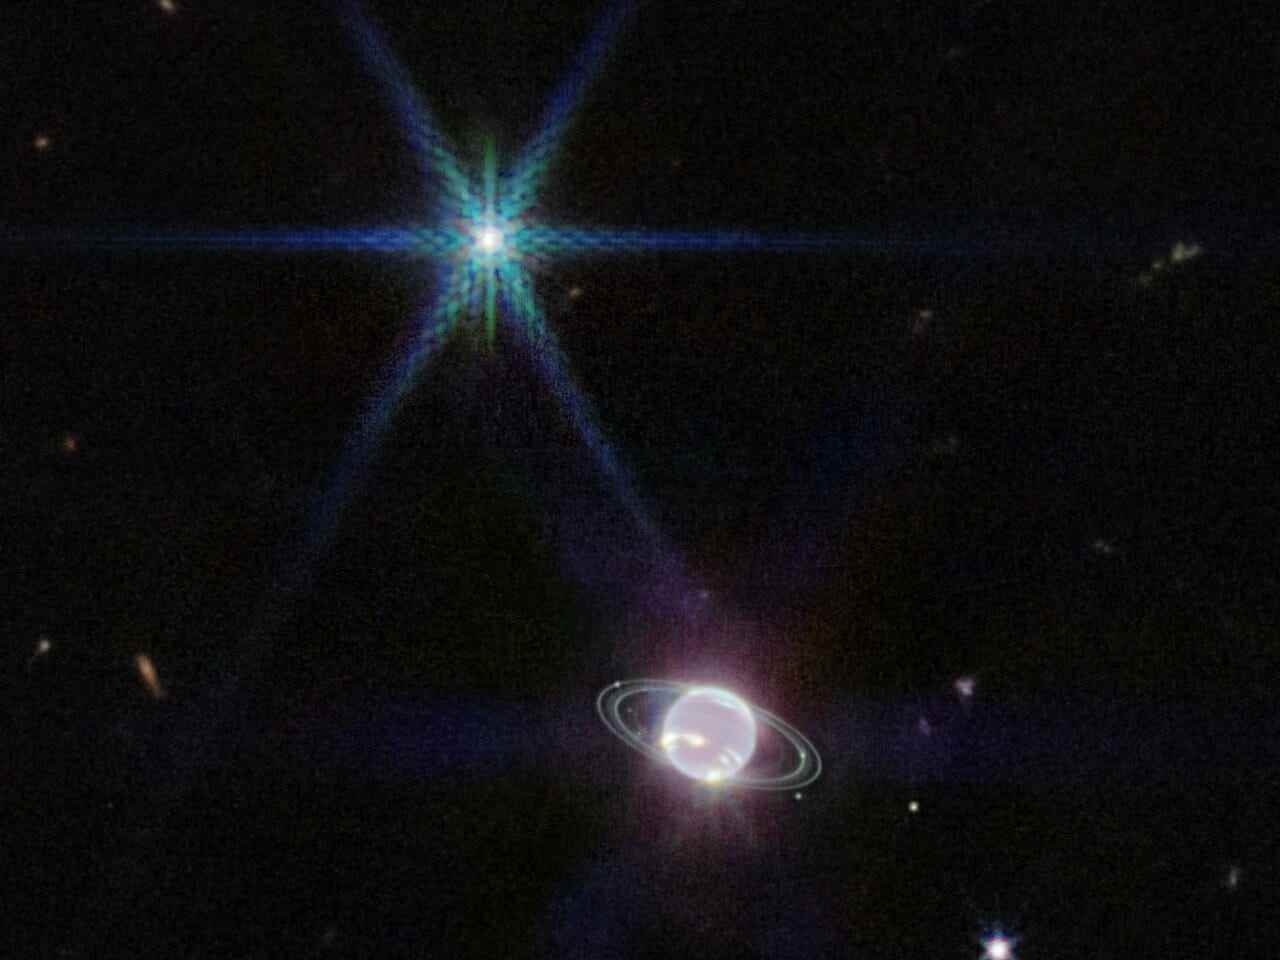 Webbs Near-Infrared Camera (NIRCam)-Bild von Neptun und seinen Ringen.  Neptun hat 14 bekannte Satelliten, von denen sieben auf diesem Bild zu sehen sind.